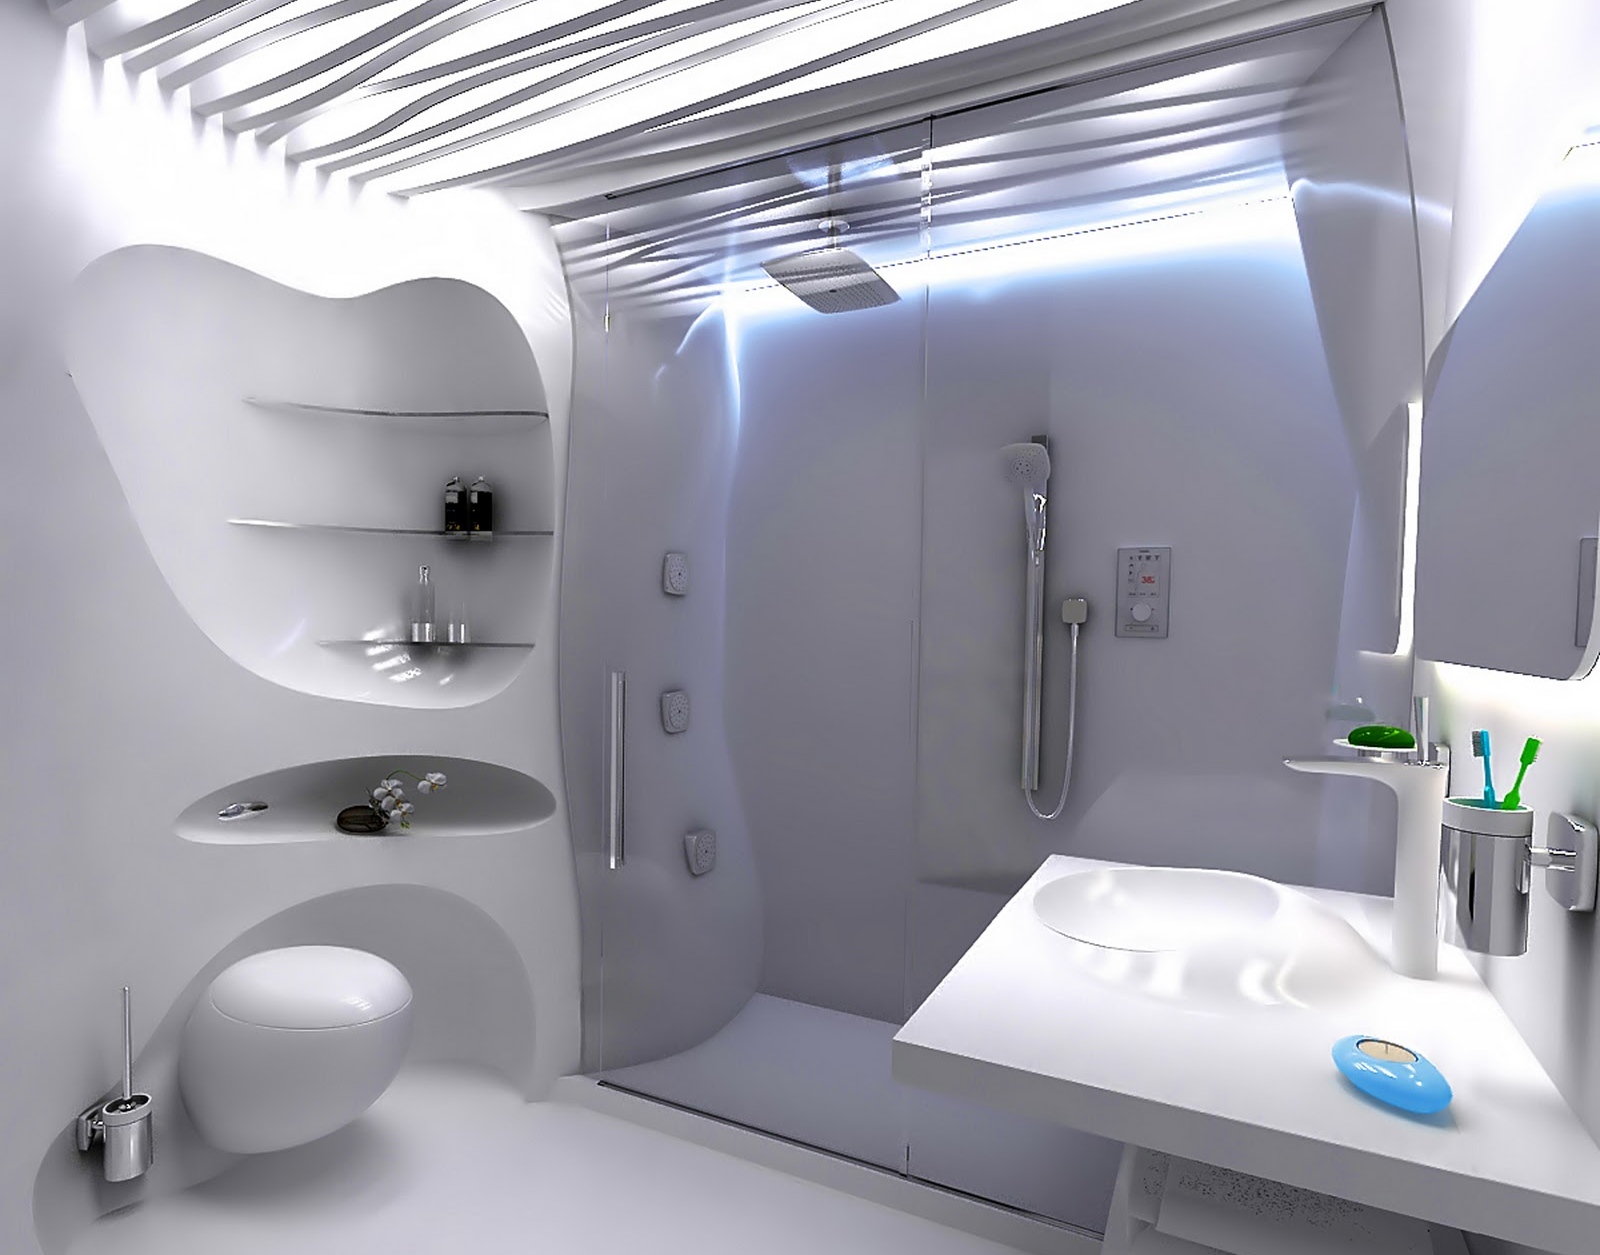 interno bagno irreale in stile bionico